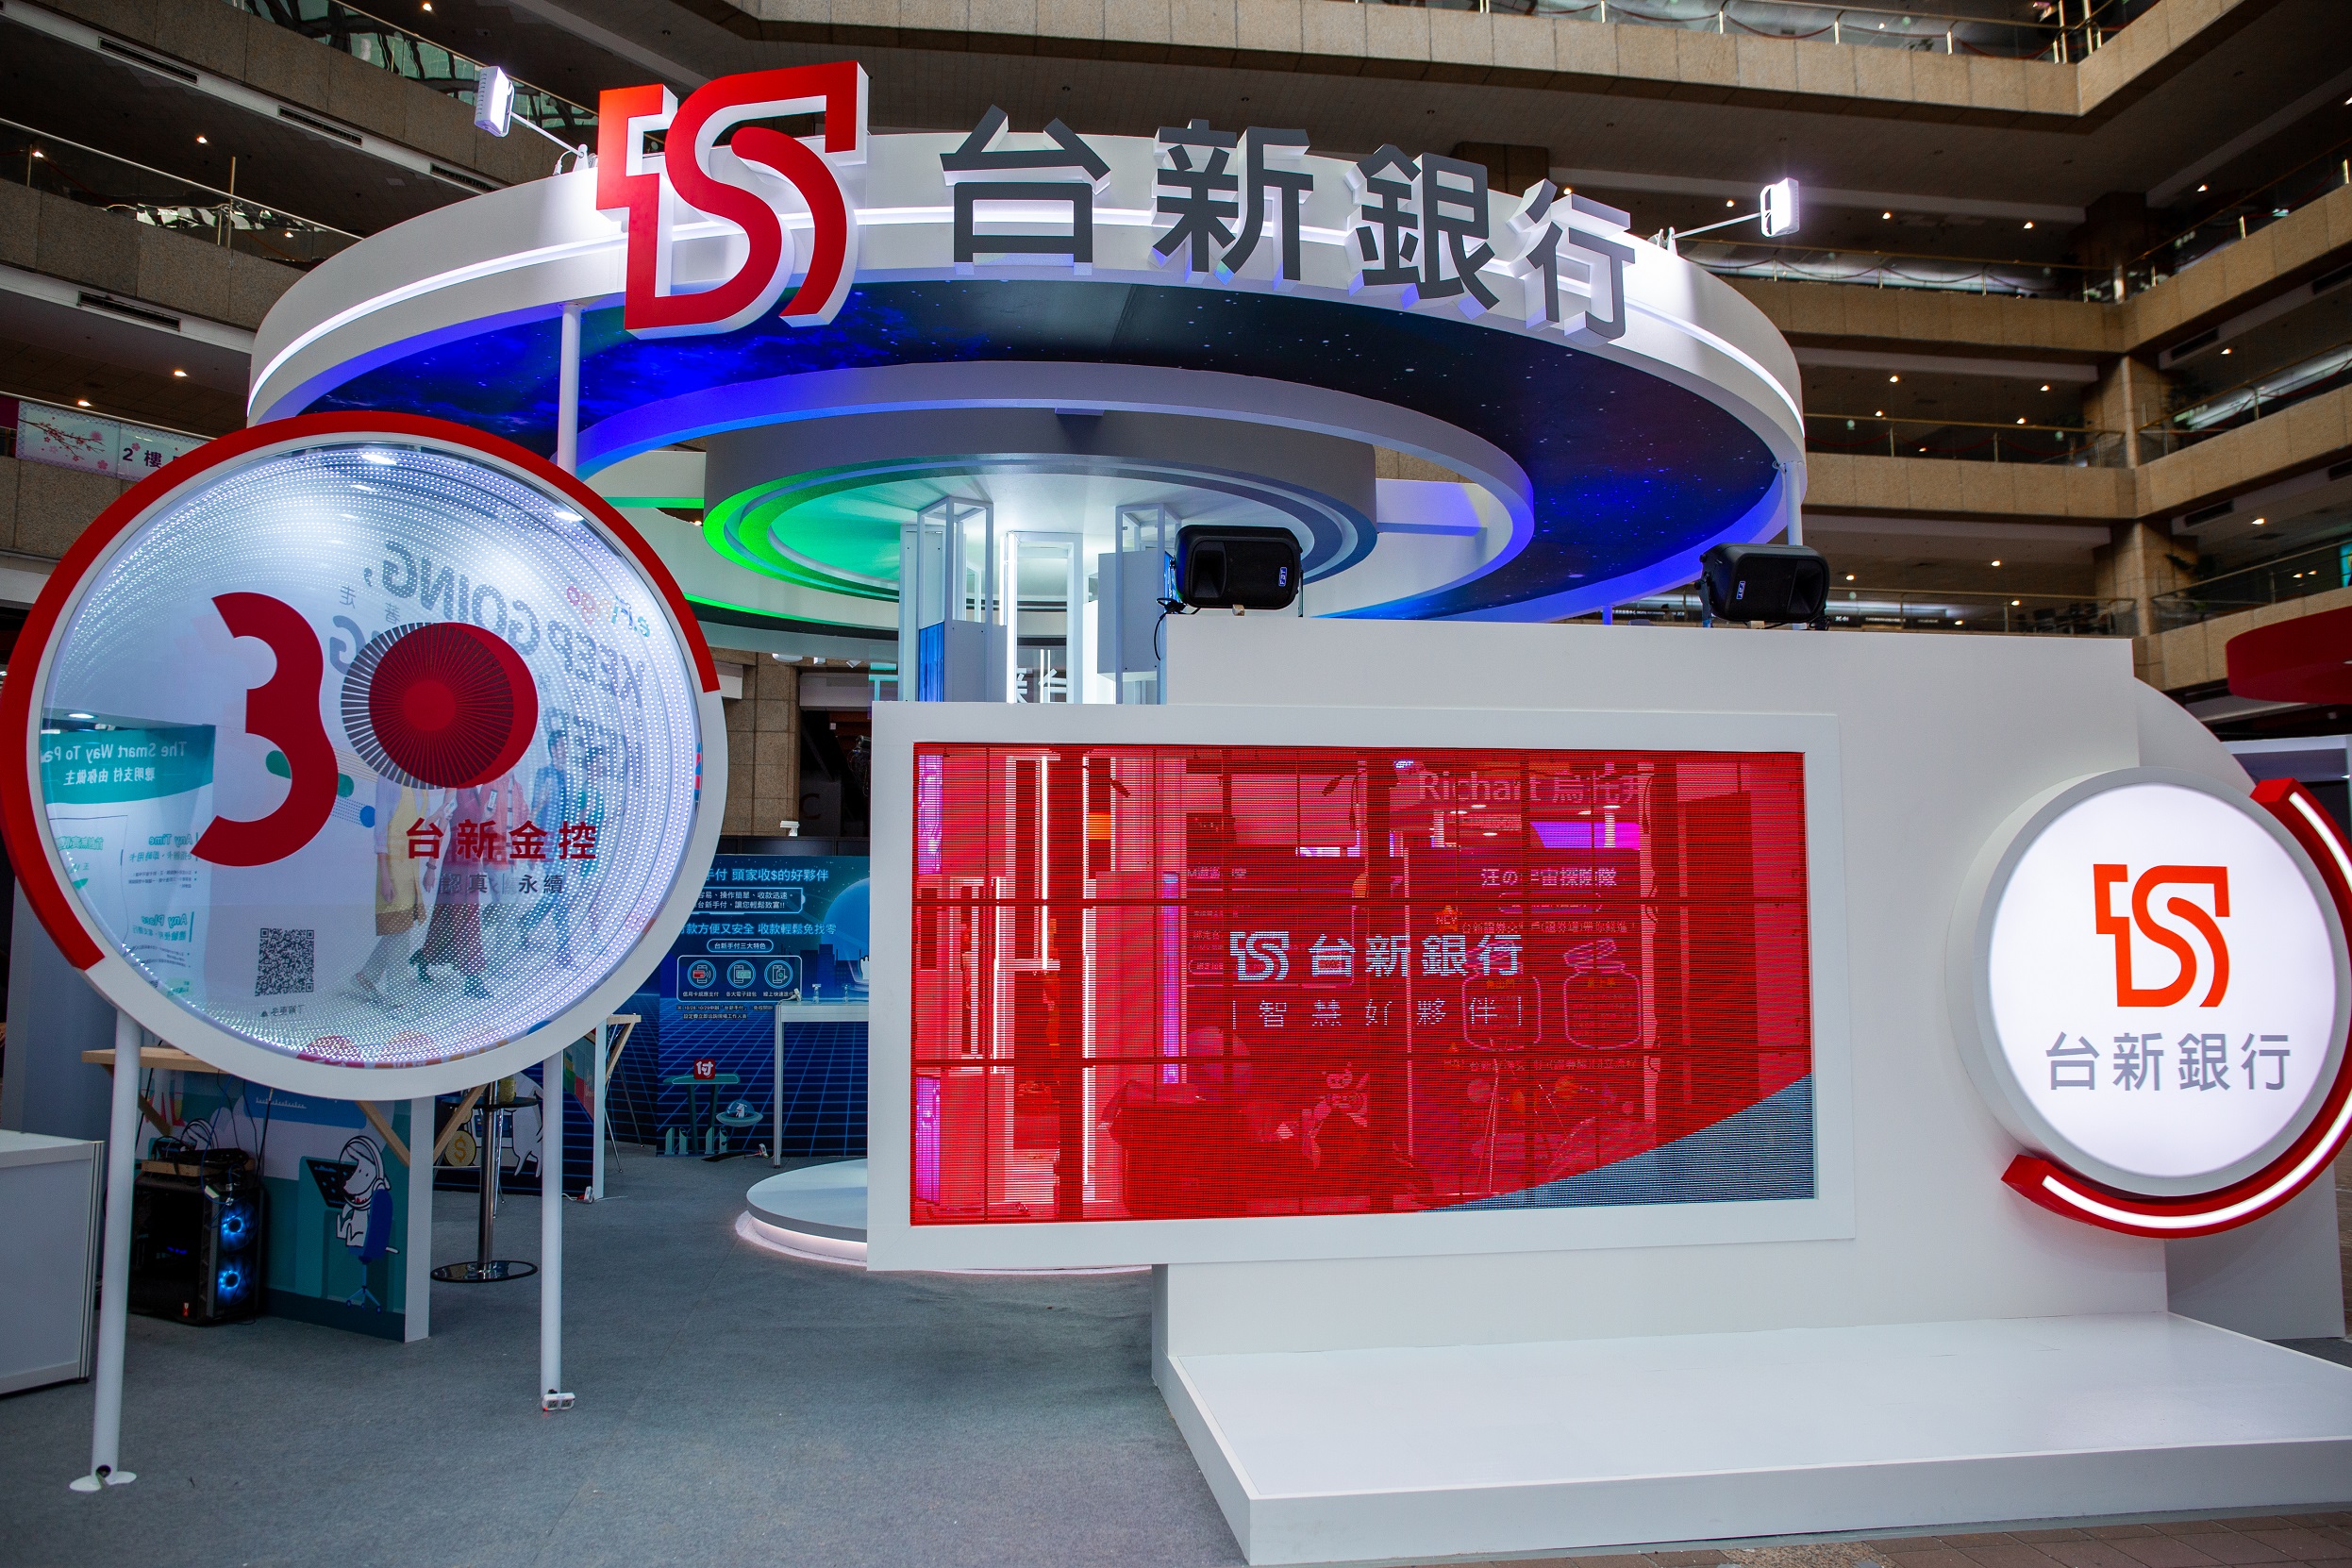 20221027_台新宇宙總部降臨Fintech Taipei打造虛擬分行 帶路置身元宇宙金融場景_新聞照